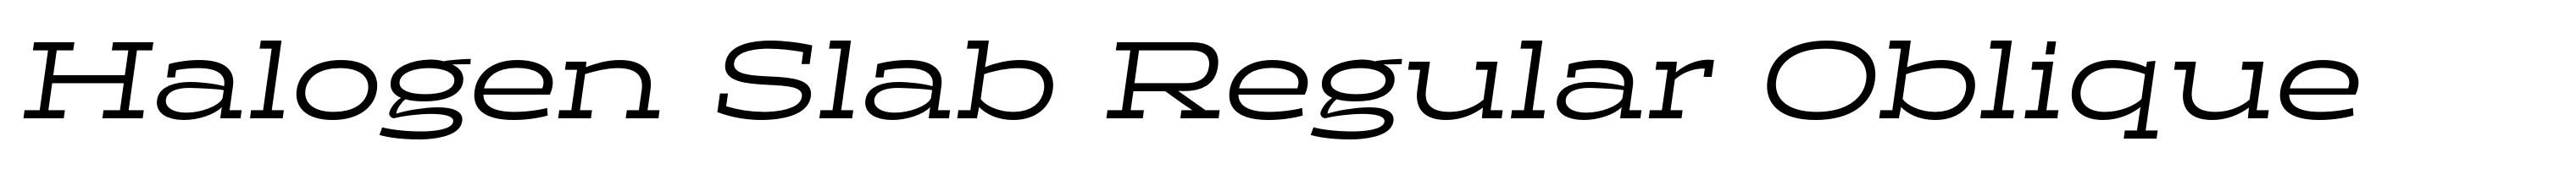 Halogen Slab Regular Oblique